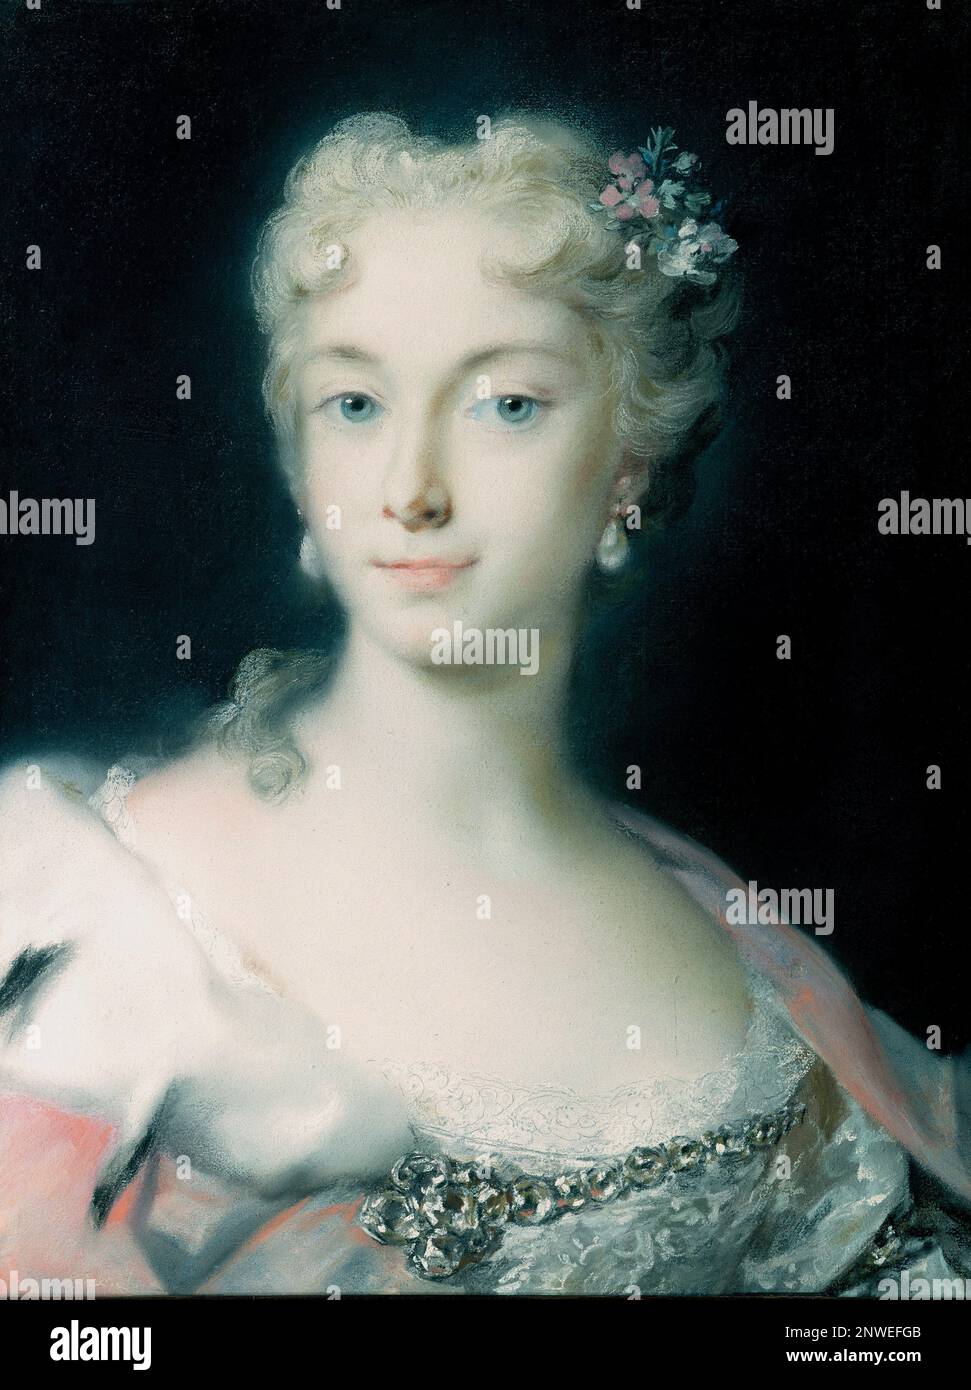 Maria Theresa, Maria Theresa Walburga Amalia Christina (1717-1780), Herrscherin der Habsburger Herrschaft, war Herzogin von Lothringen, Großherzogin der Toskana und Heilige römische Kaiserin. Gemälde von Rosalba Carriera Stockfoto